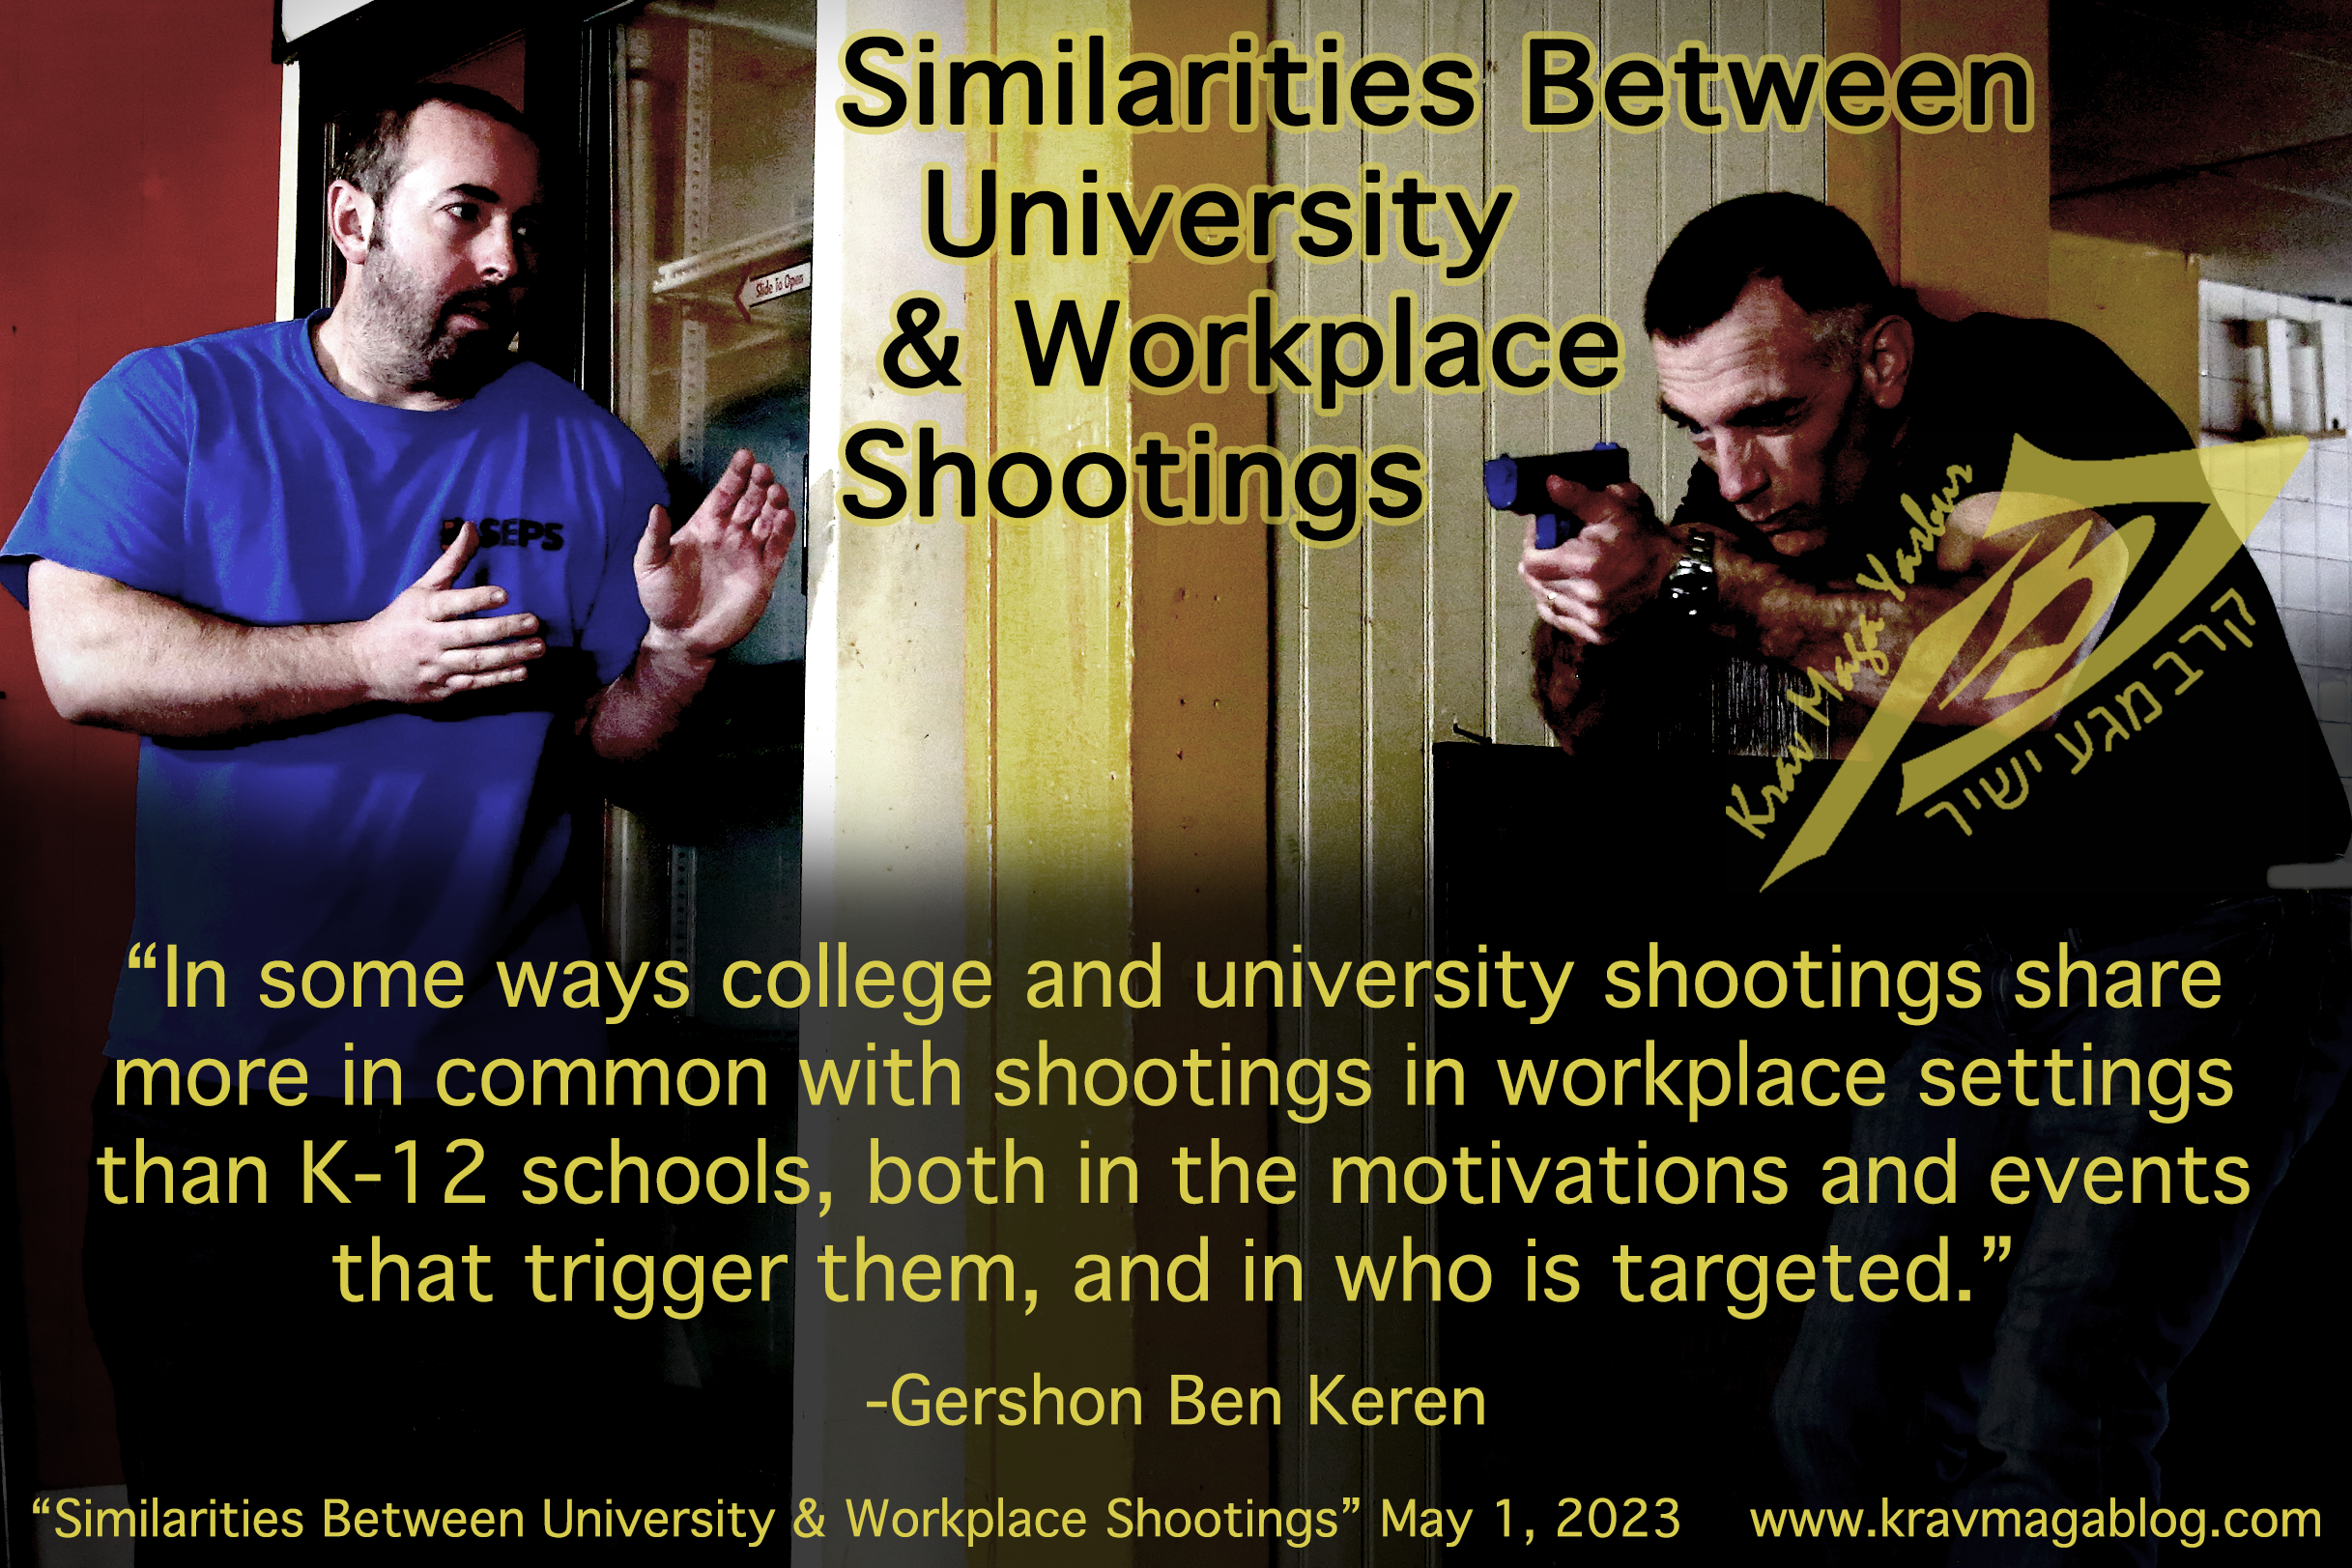 Similarities Between University & Workplace Shootings